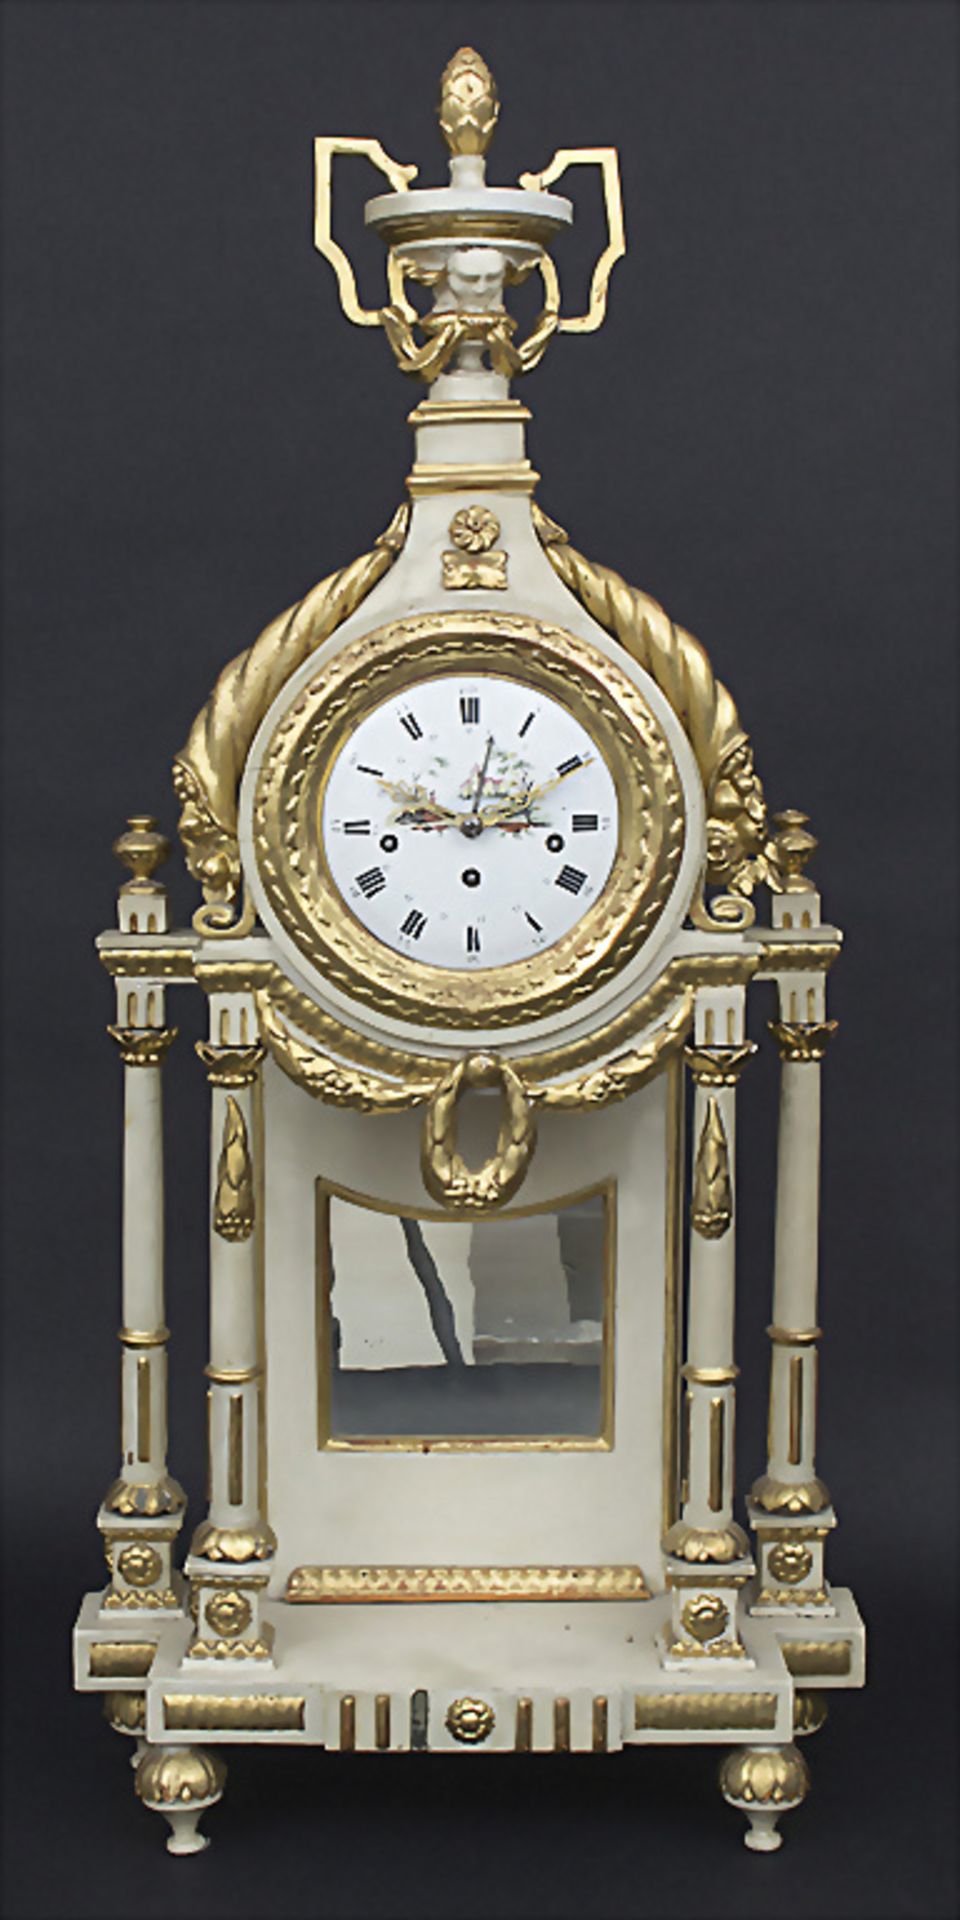 Louis-Seize-Kaminuhr / Louis-Seize mantle Clock, Jocob Scholz, Neumarkt, um 1775